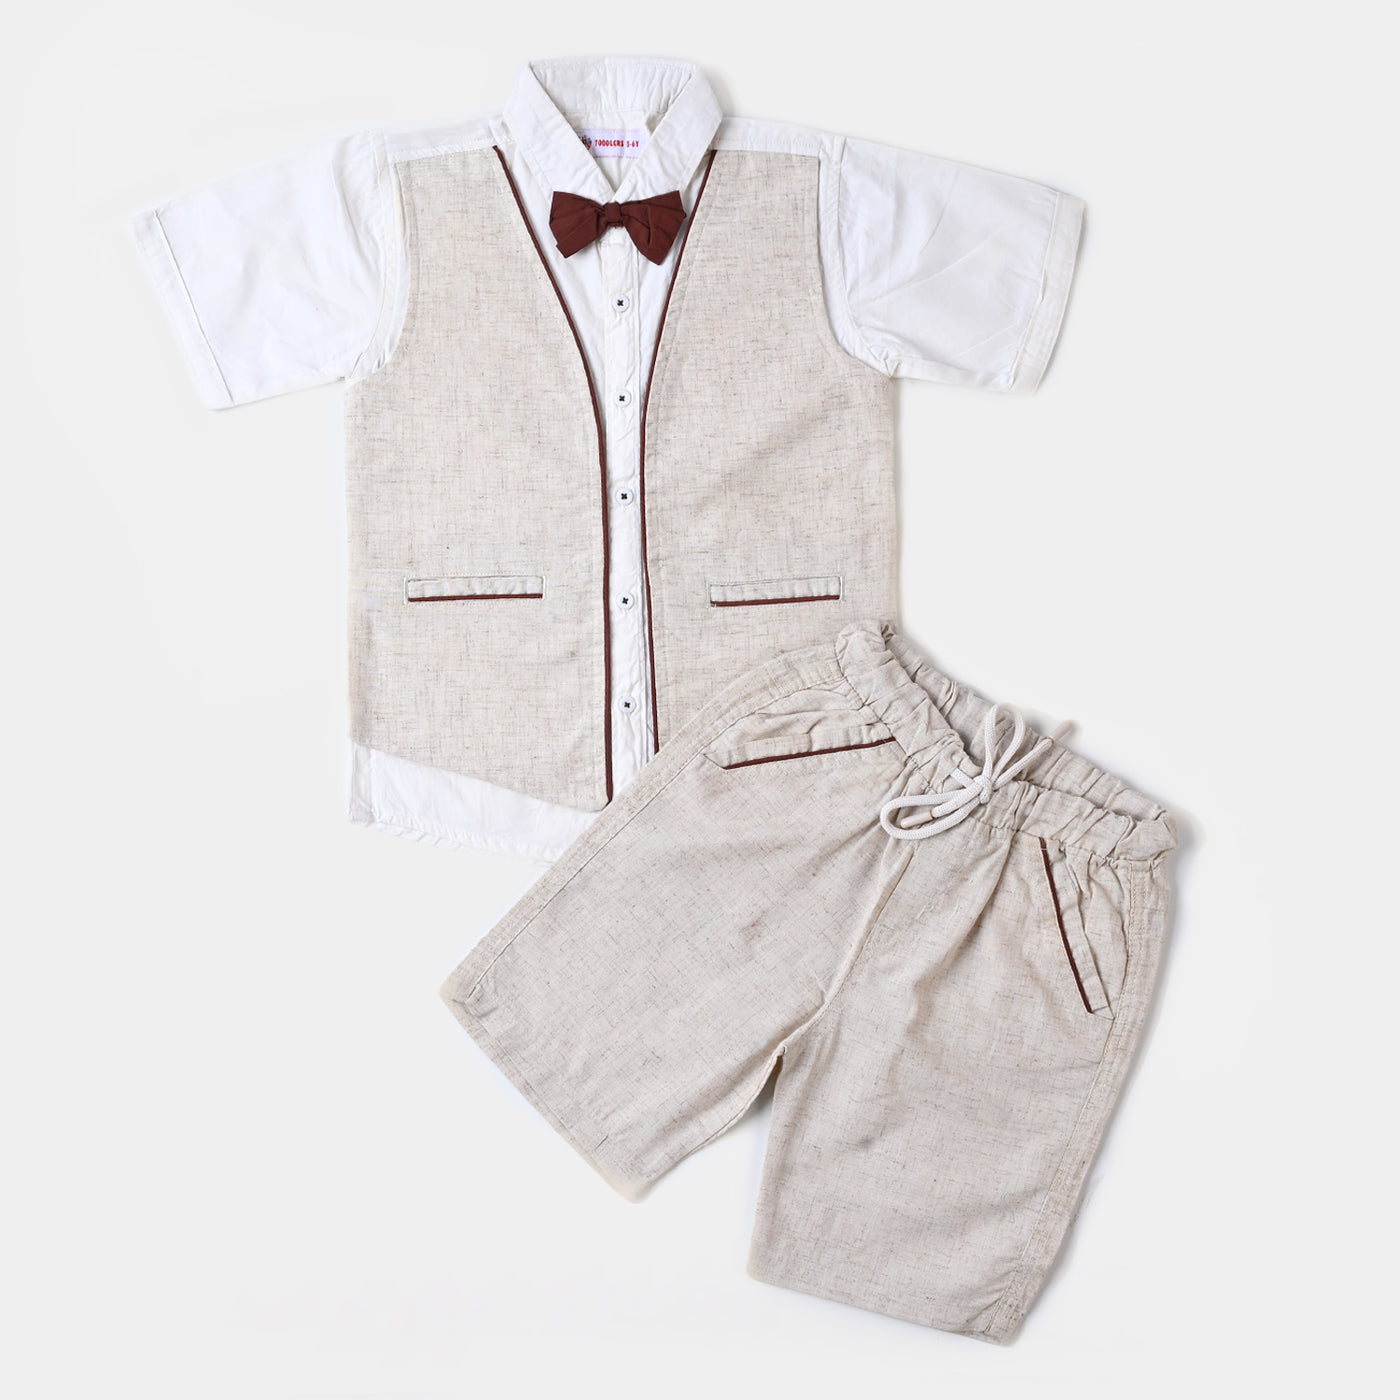 Infant Boys Cotton Suit  - Sand